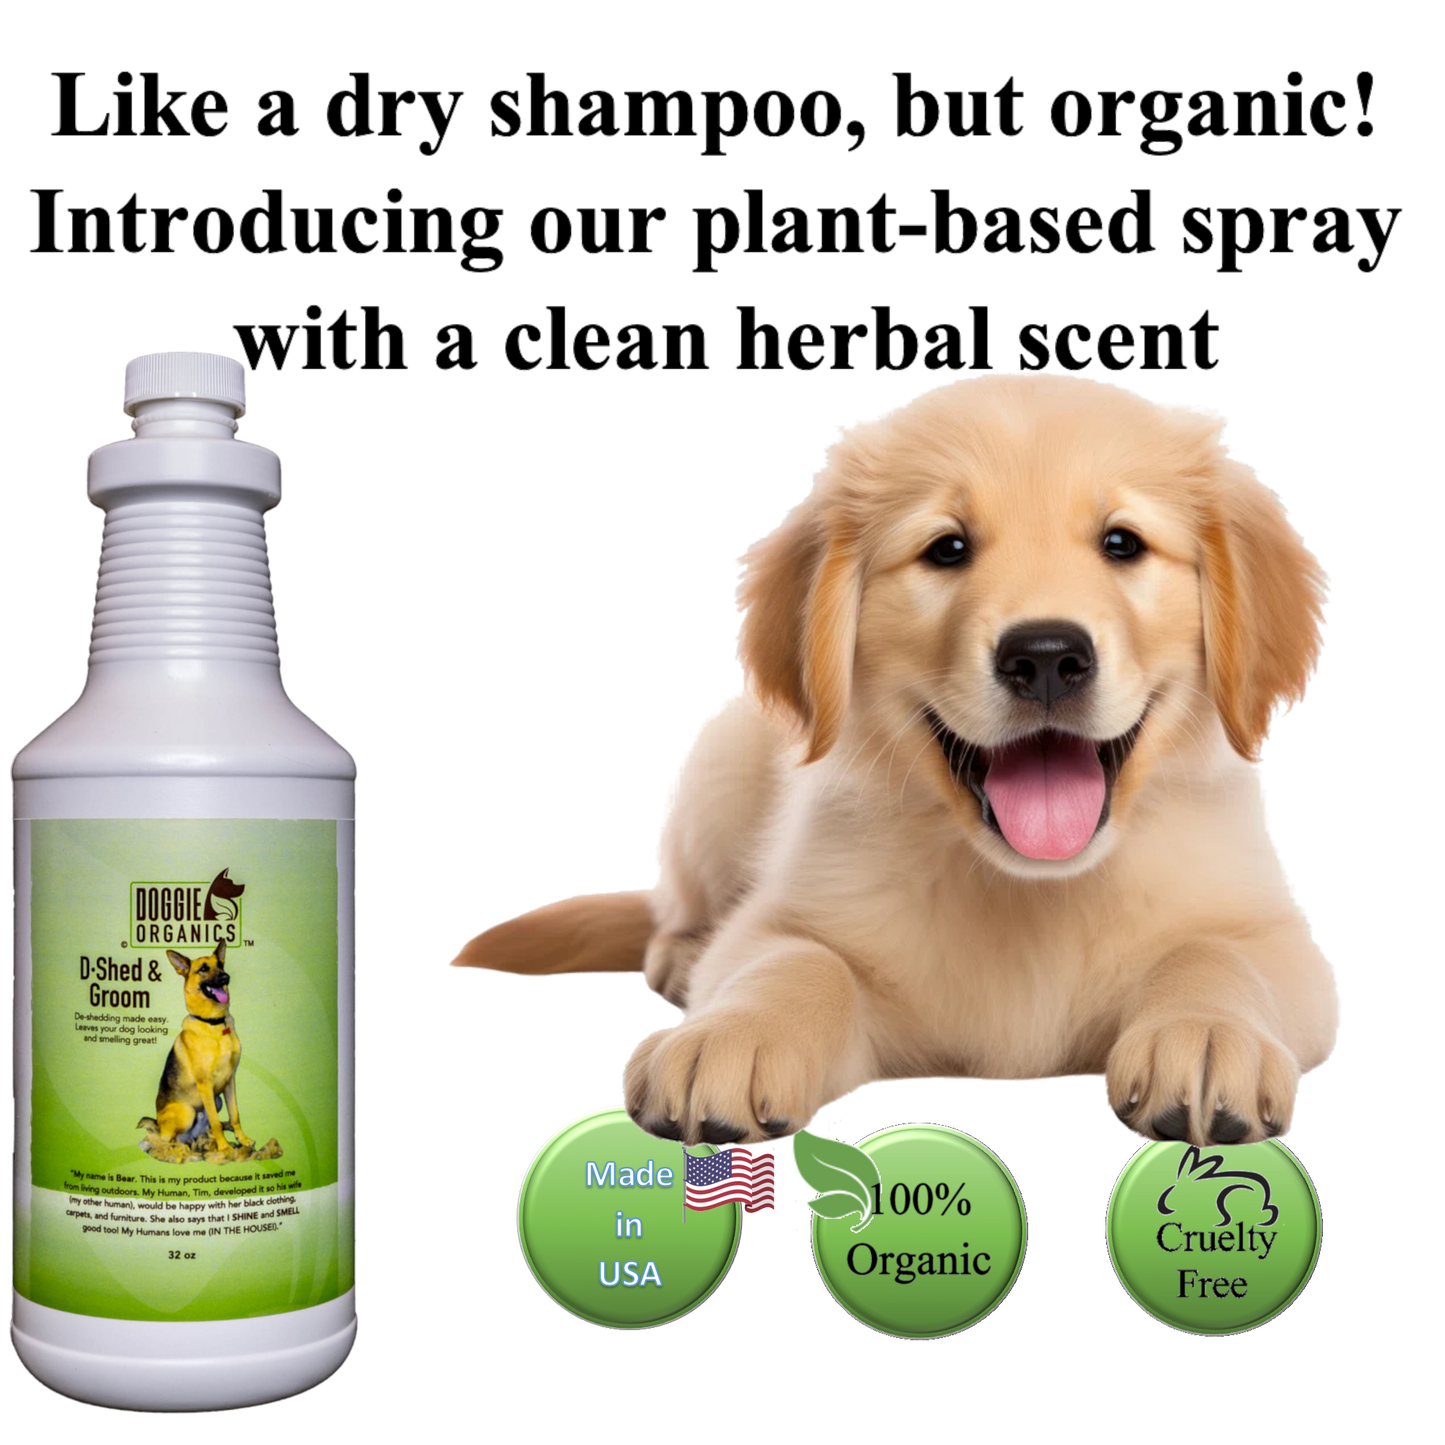 Doggie Organics D-Shed and Groom Dry Shampoo